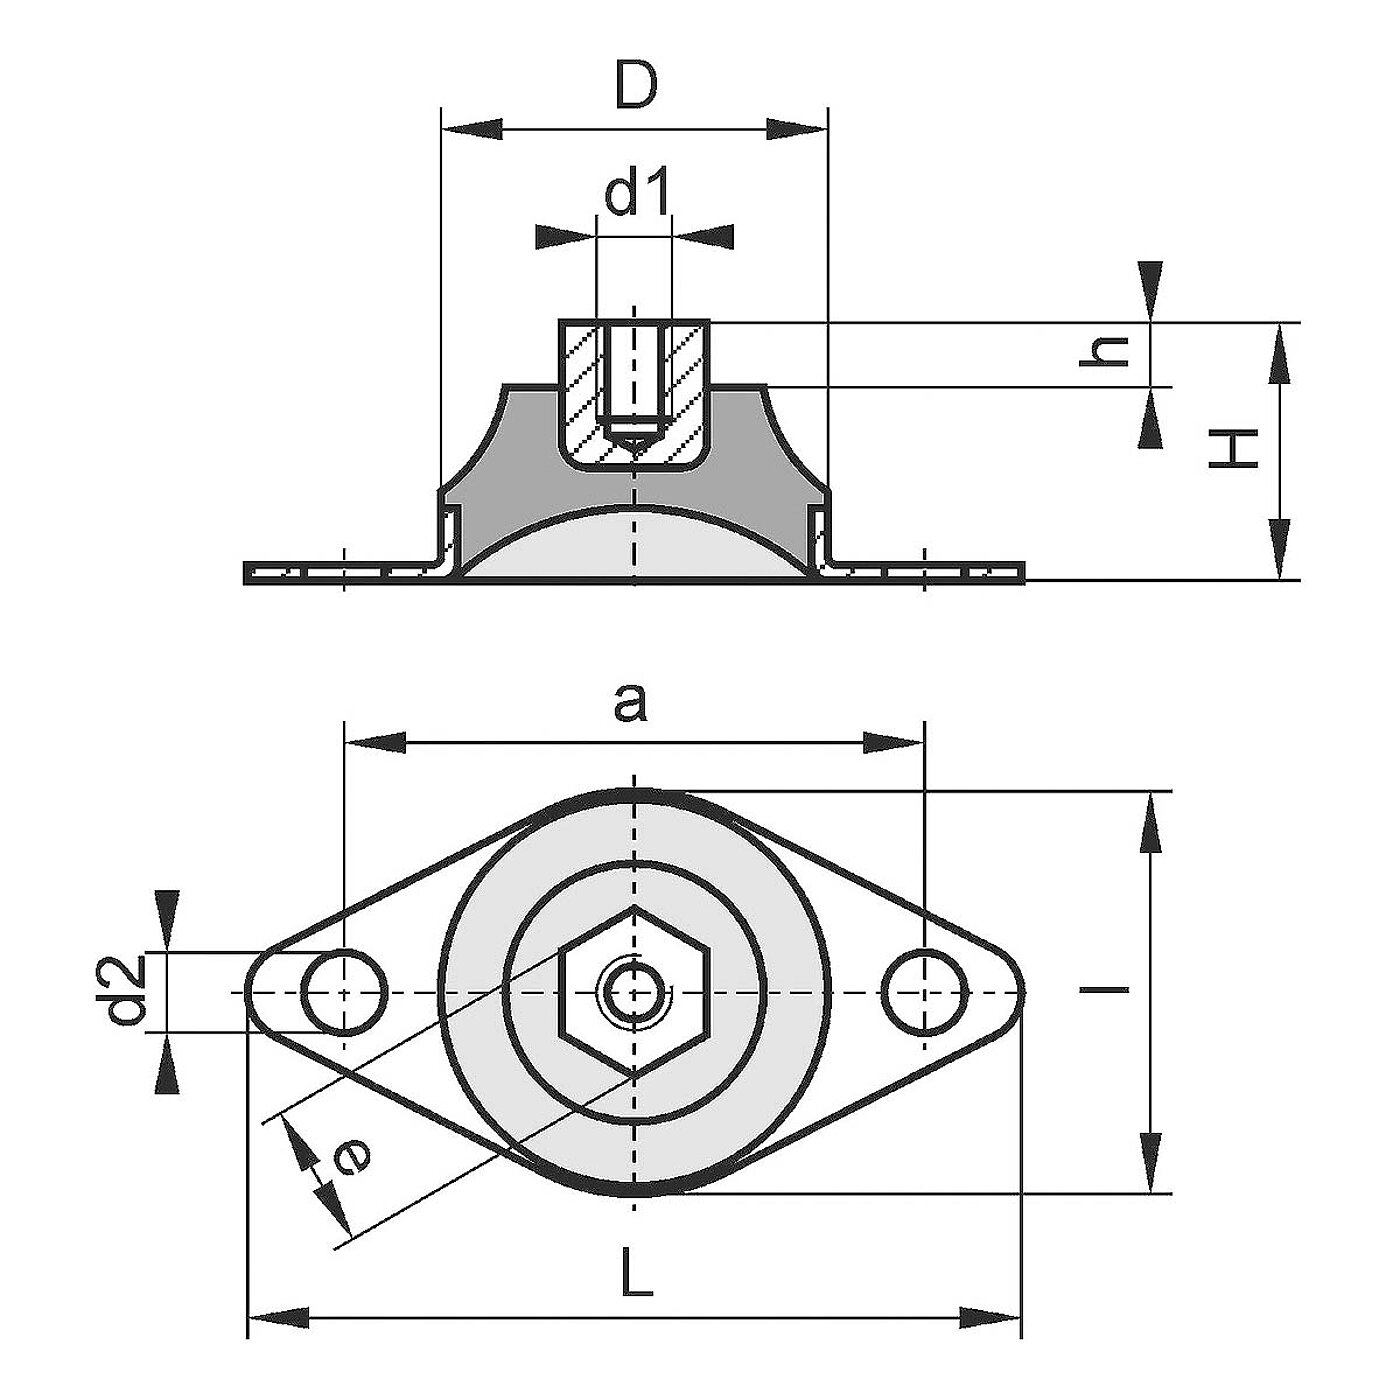 schematische Zeichnung eines Gummi-Metall-Elementes mit Bodenplatte, Gewindeeinsatz und dazwischenliegendem Elastomerkorpus